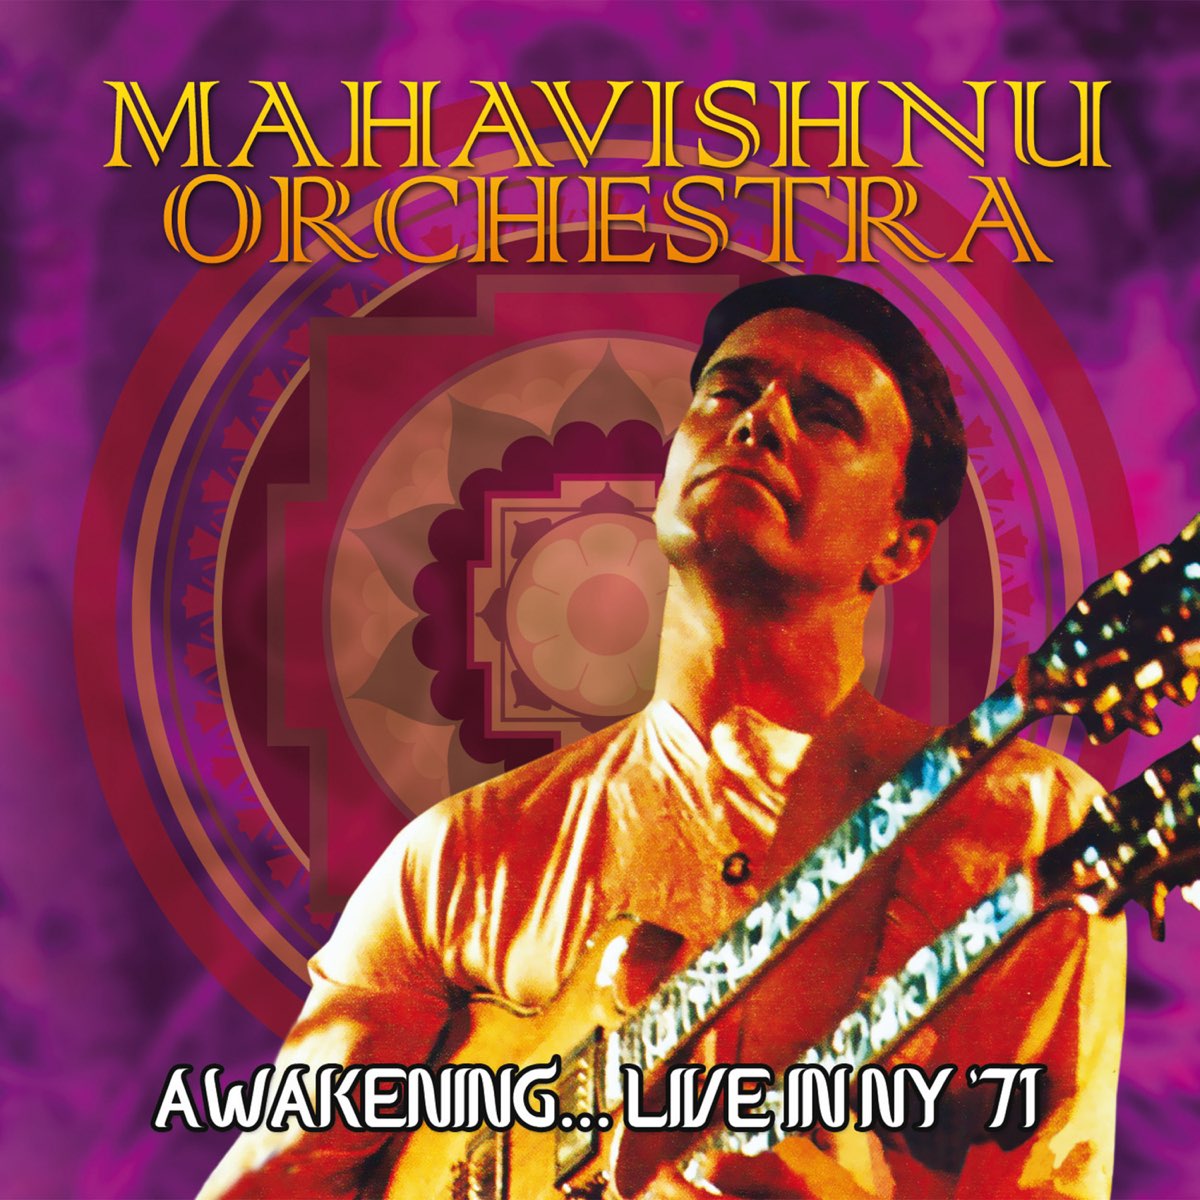 Mahavishnu orchestra. Группа Mahavishnu Orchestra альбомы. Awakening Mahavishnu Orchestra. The Mahavishnu Orchestra Live.